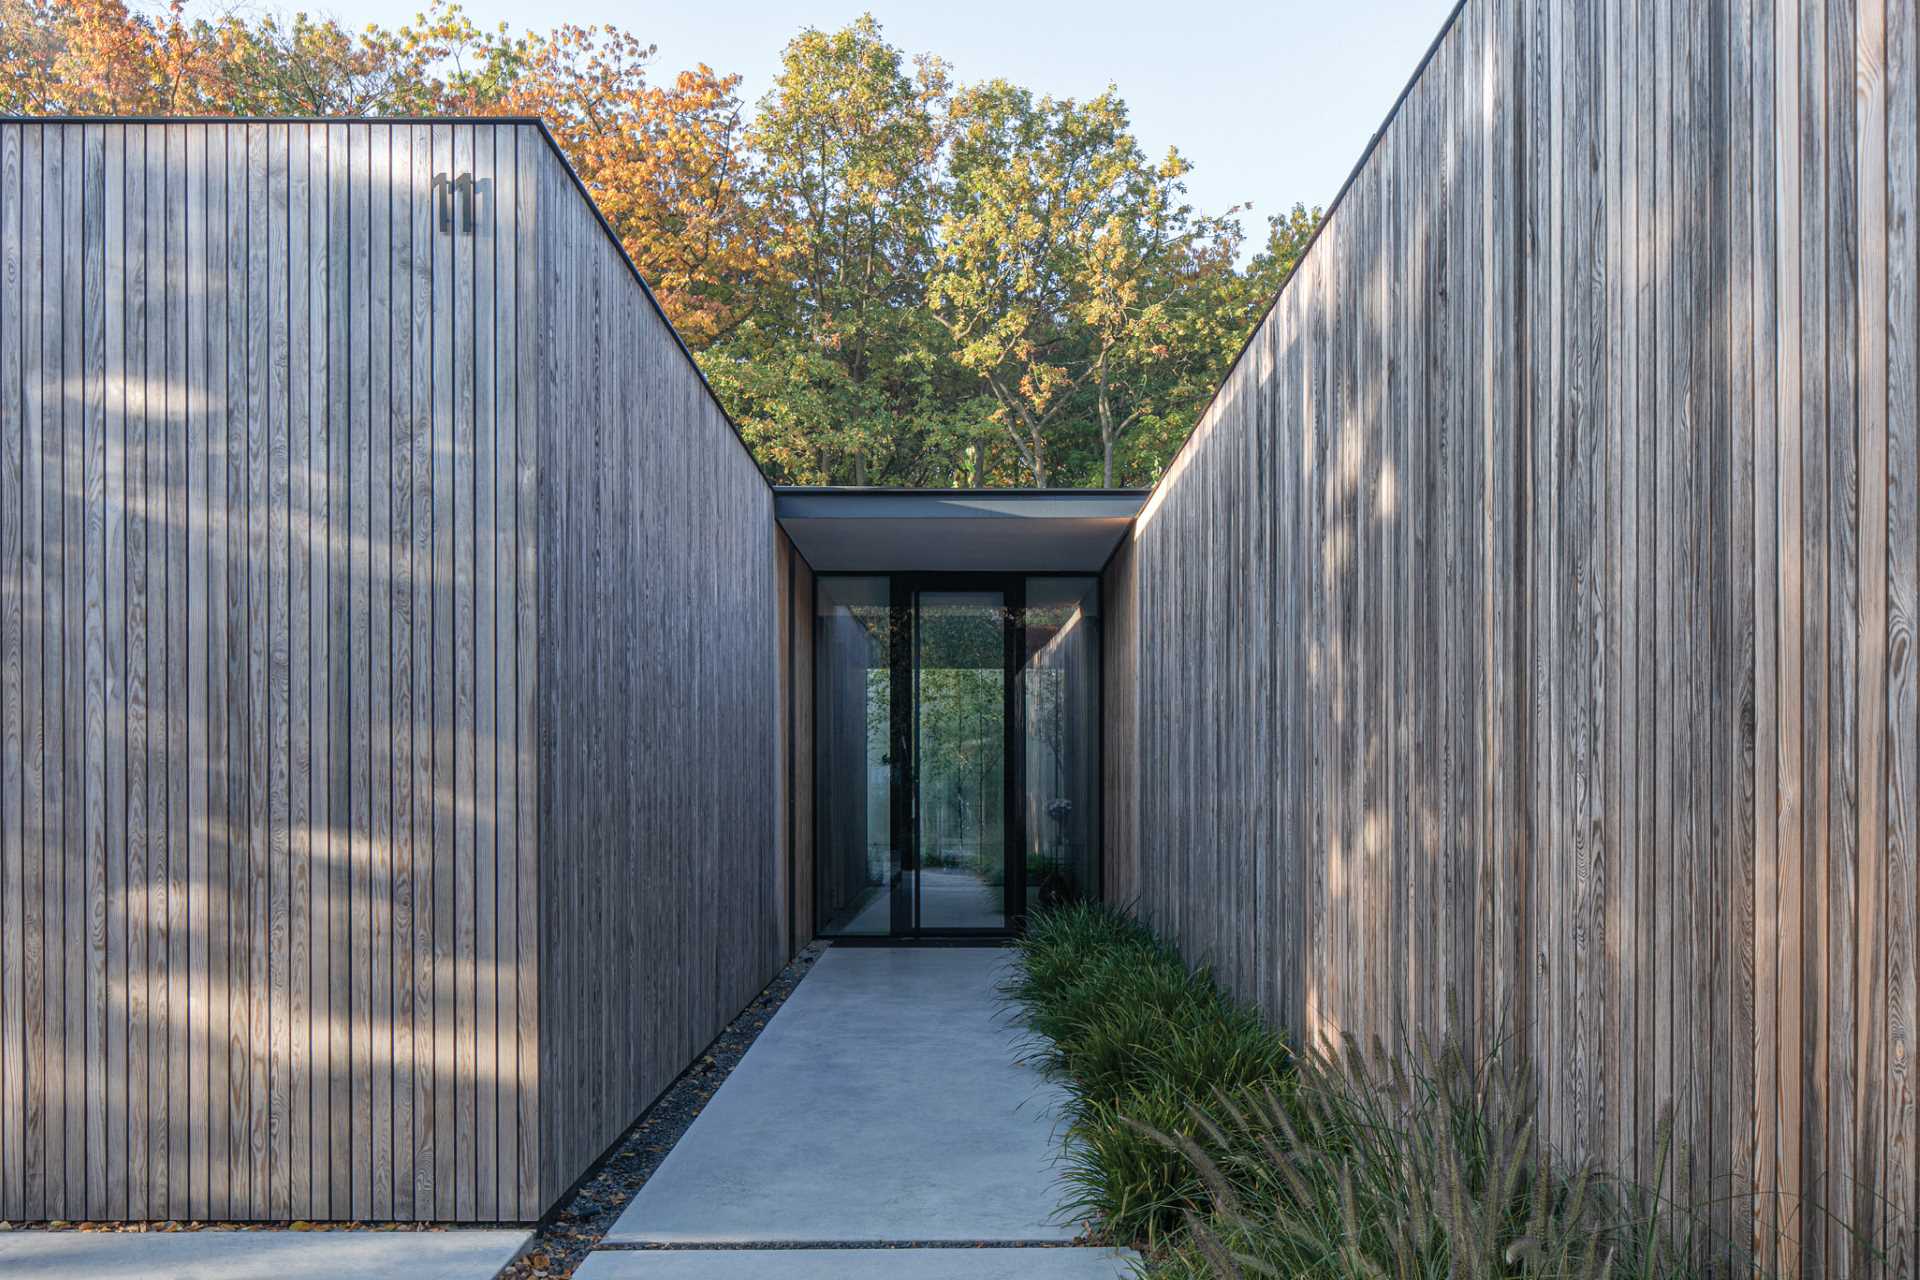 Un exterior de siding vertical din lemn ajută această casă să se integreze în pădurea din jur